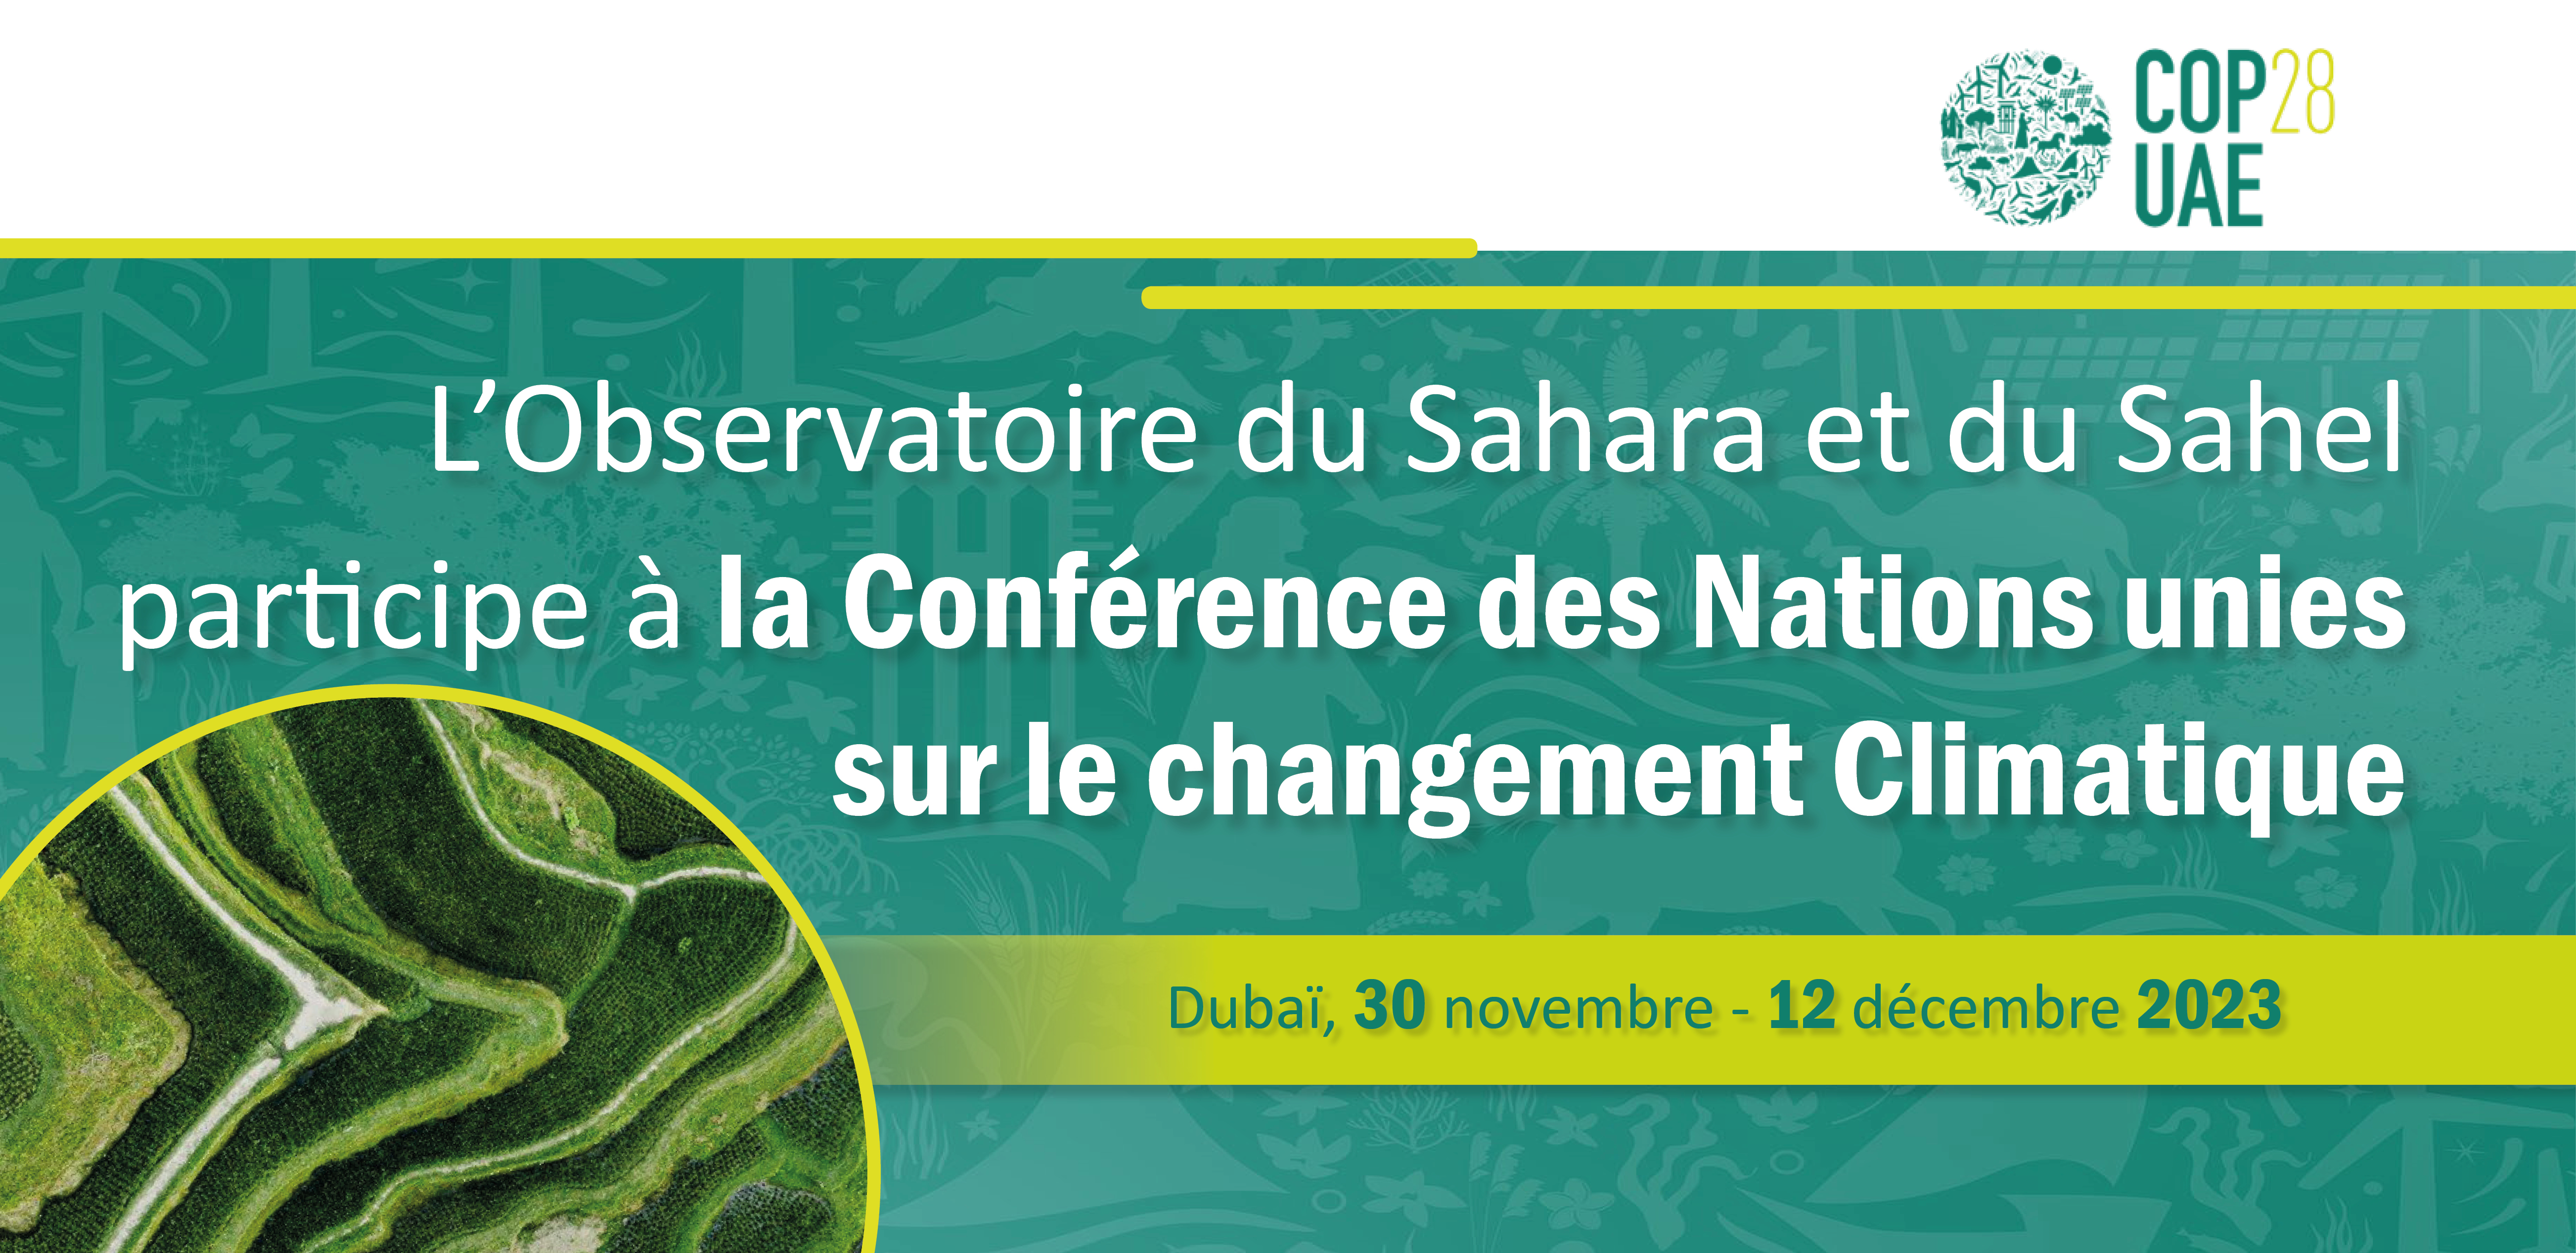  L’Observatoire du Sahara et du Sahel prend part à la 28e Session de la Conférence des NU sur les changements climatiques 2023 (COP 28) 